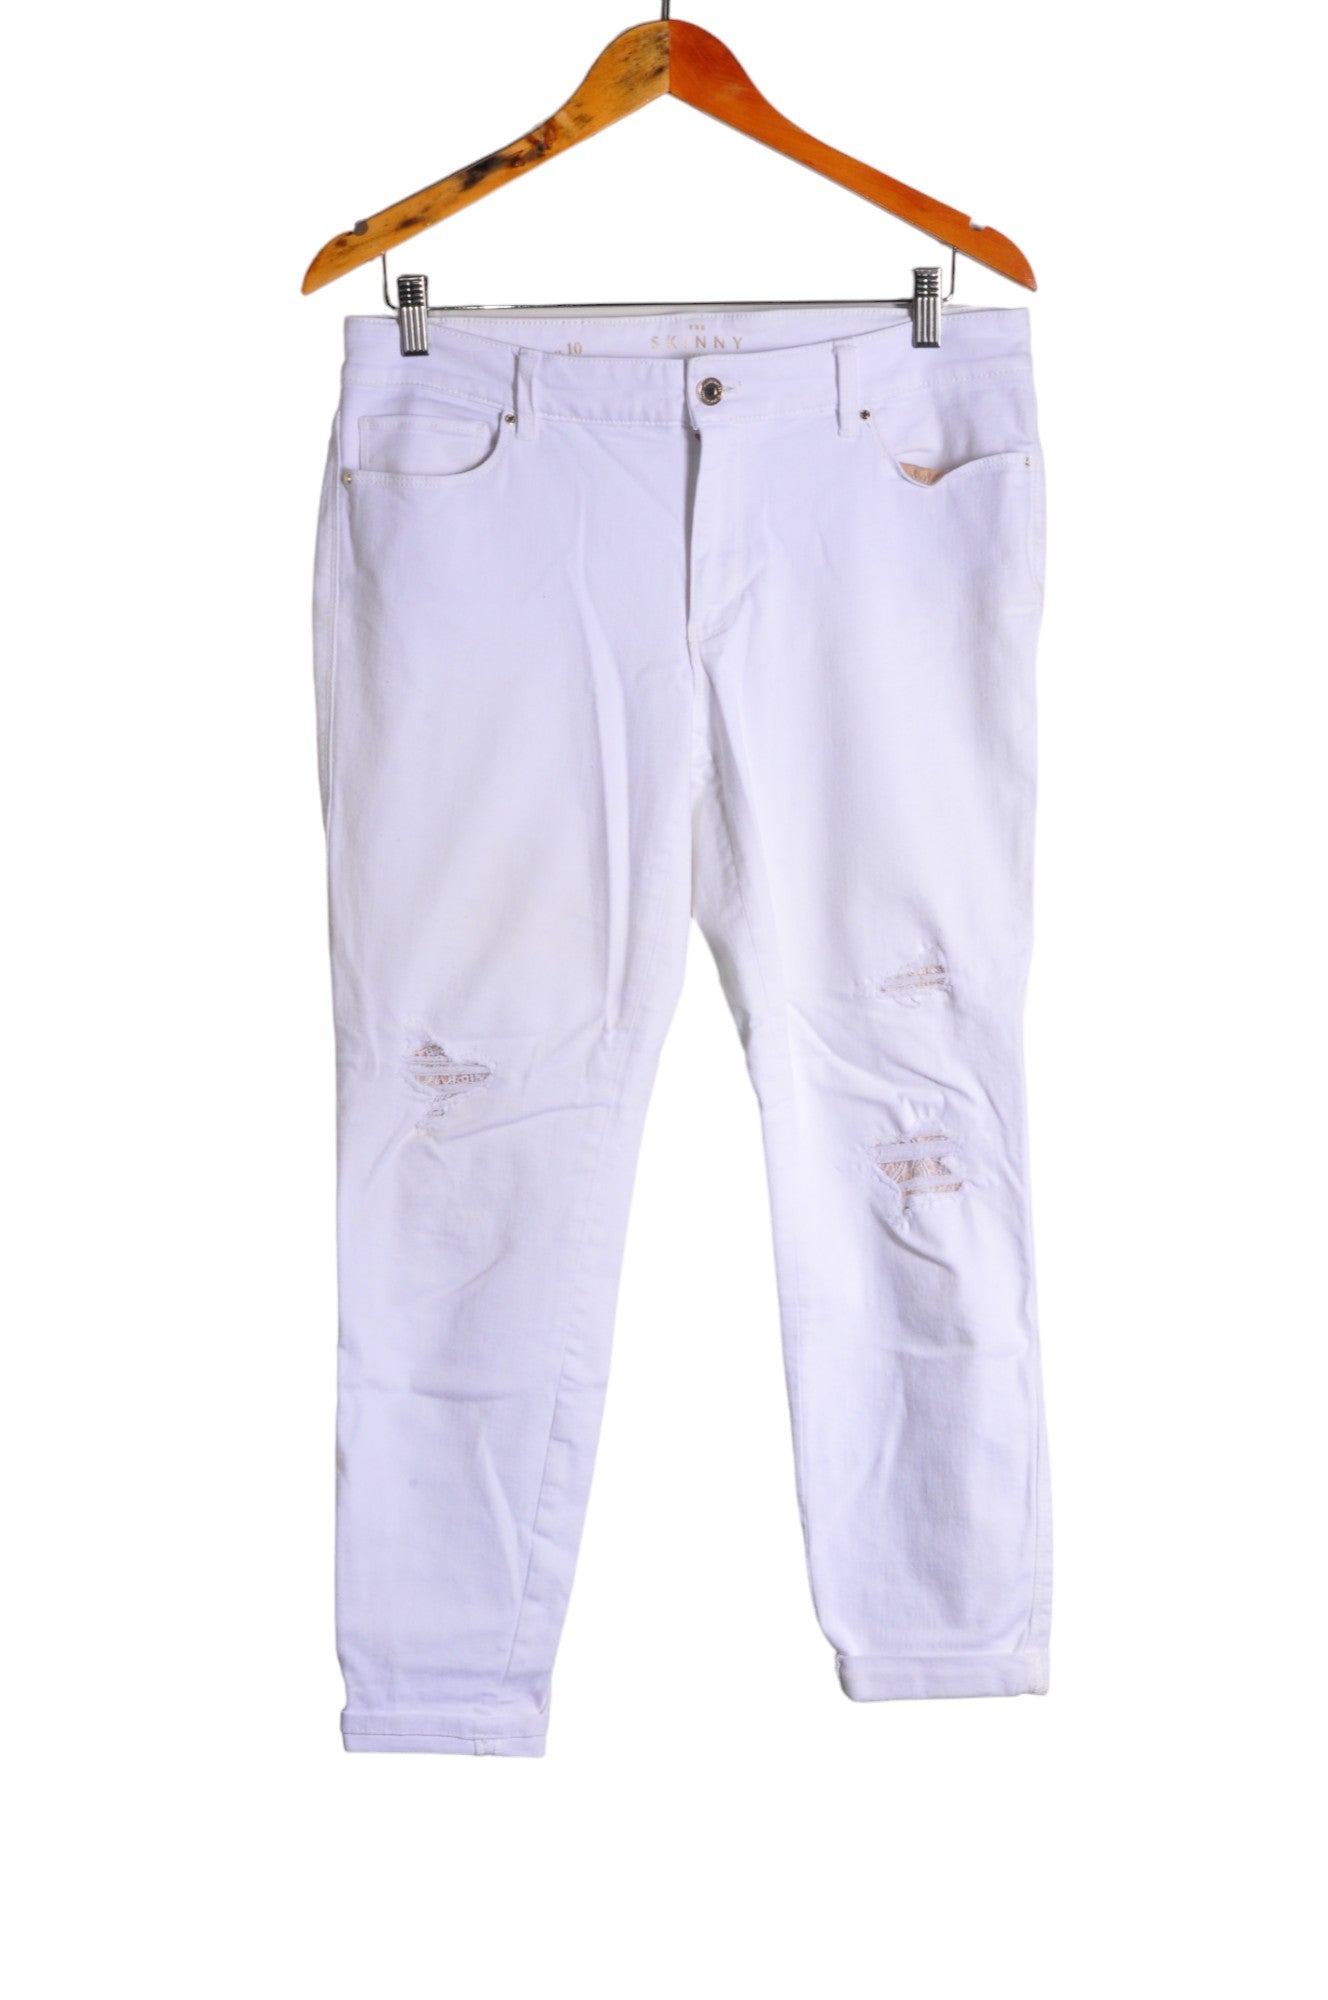 UNBRANDED Women Straight-Legged Jeans Regular fit in White - Size 10 | 19.2 $ KOOP